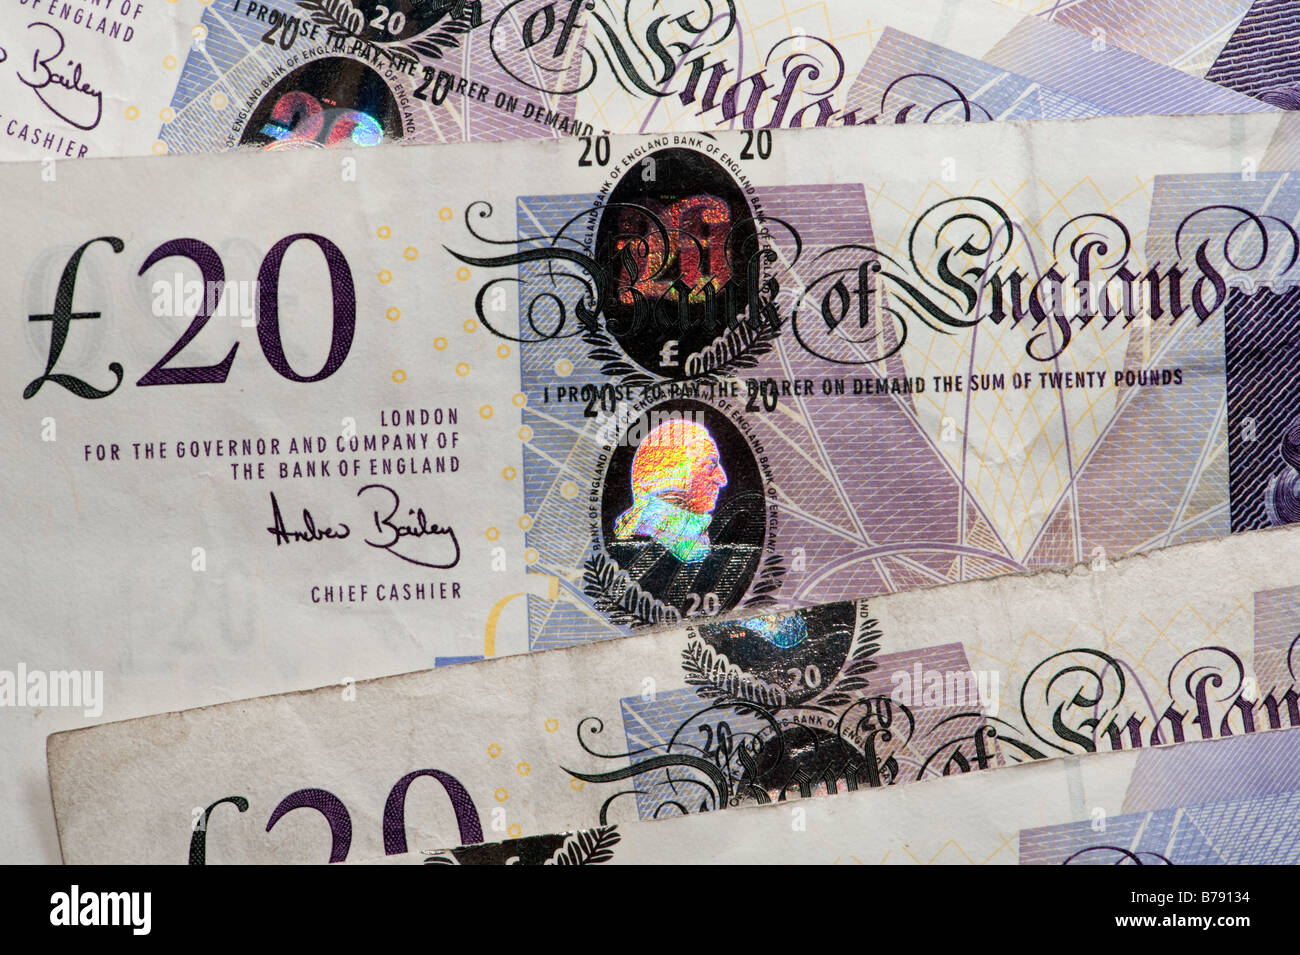 UK Regno Unito £ 20 venti pound banca note nota in contanti in valuta sterlina denaro bollette quid quids inglese british gran bretagna Foto Stock